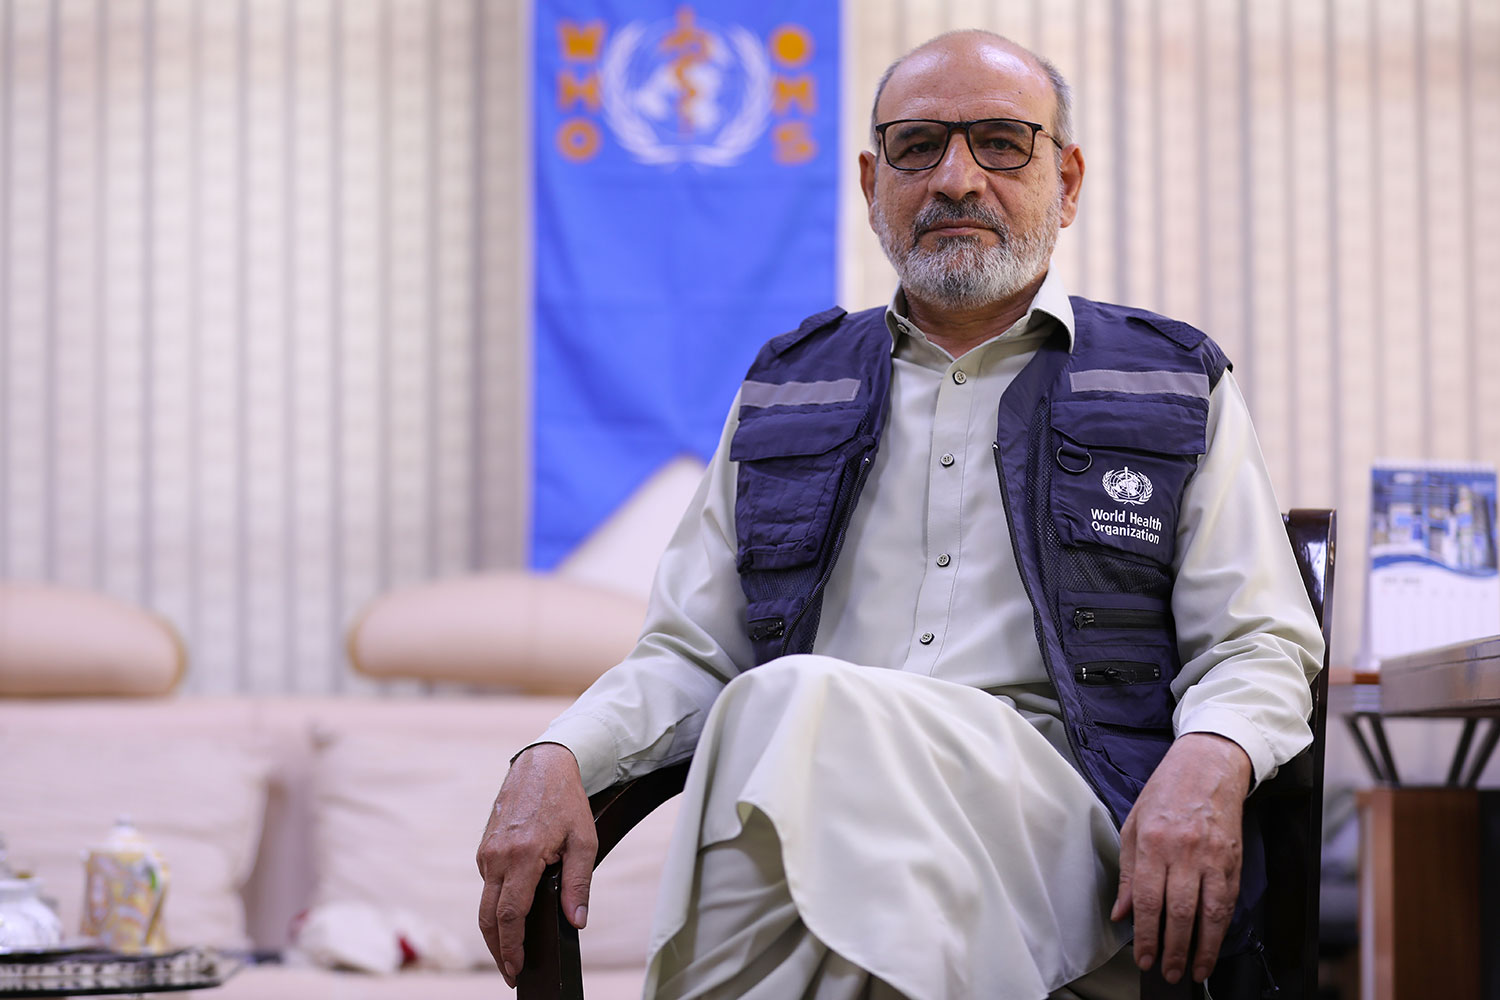 الدكتور سيد أبو بكر رسولي، مسؤول الطوارئ الصحية ومدير الأحداث، عملية المنظمة الطارئة للاستجابة لزلزال هرات، أفغانستان